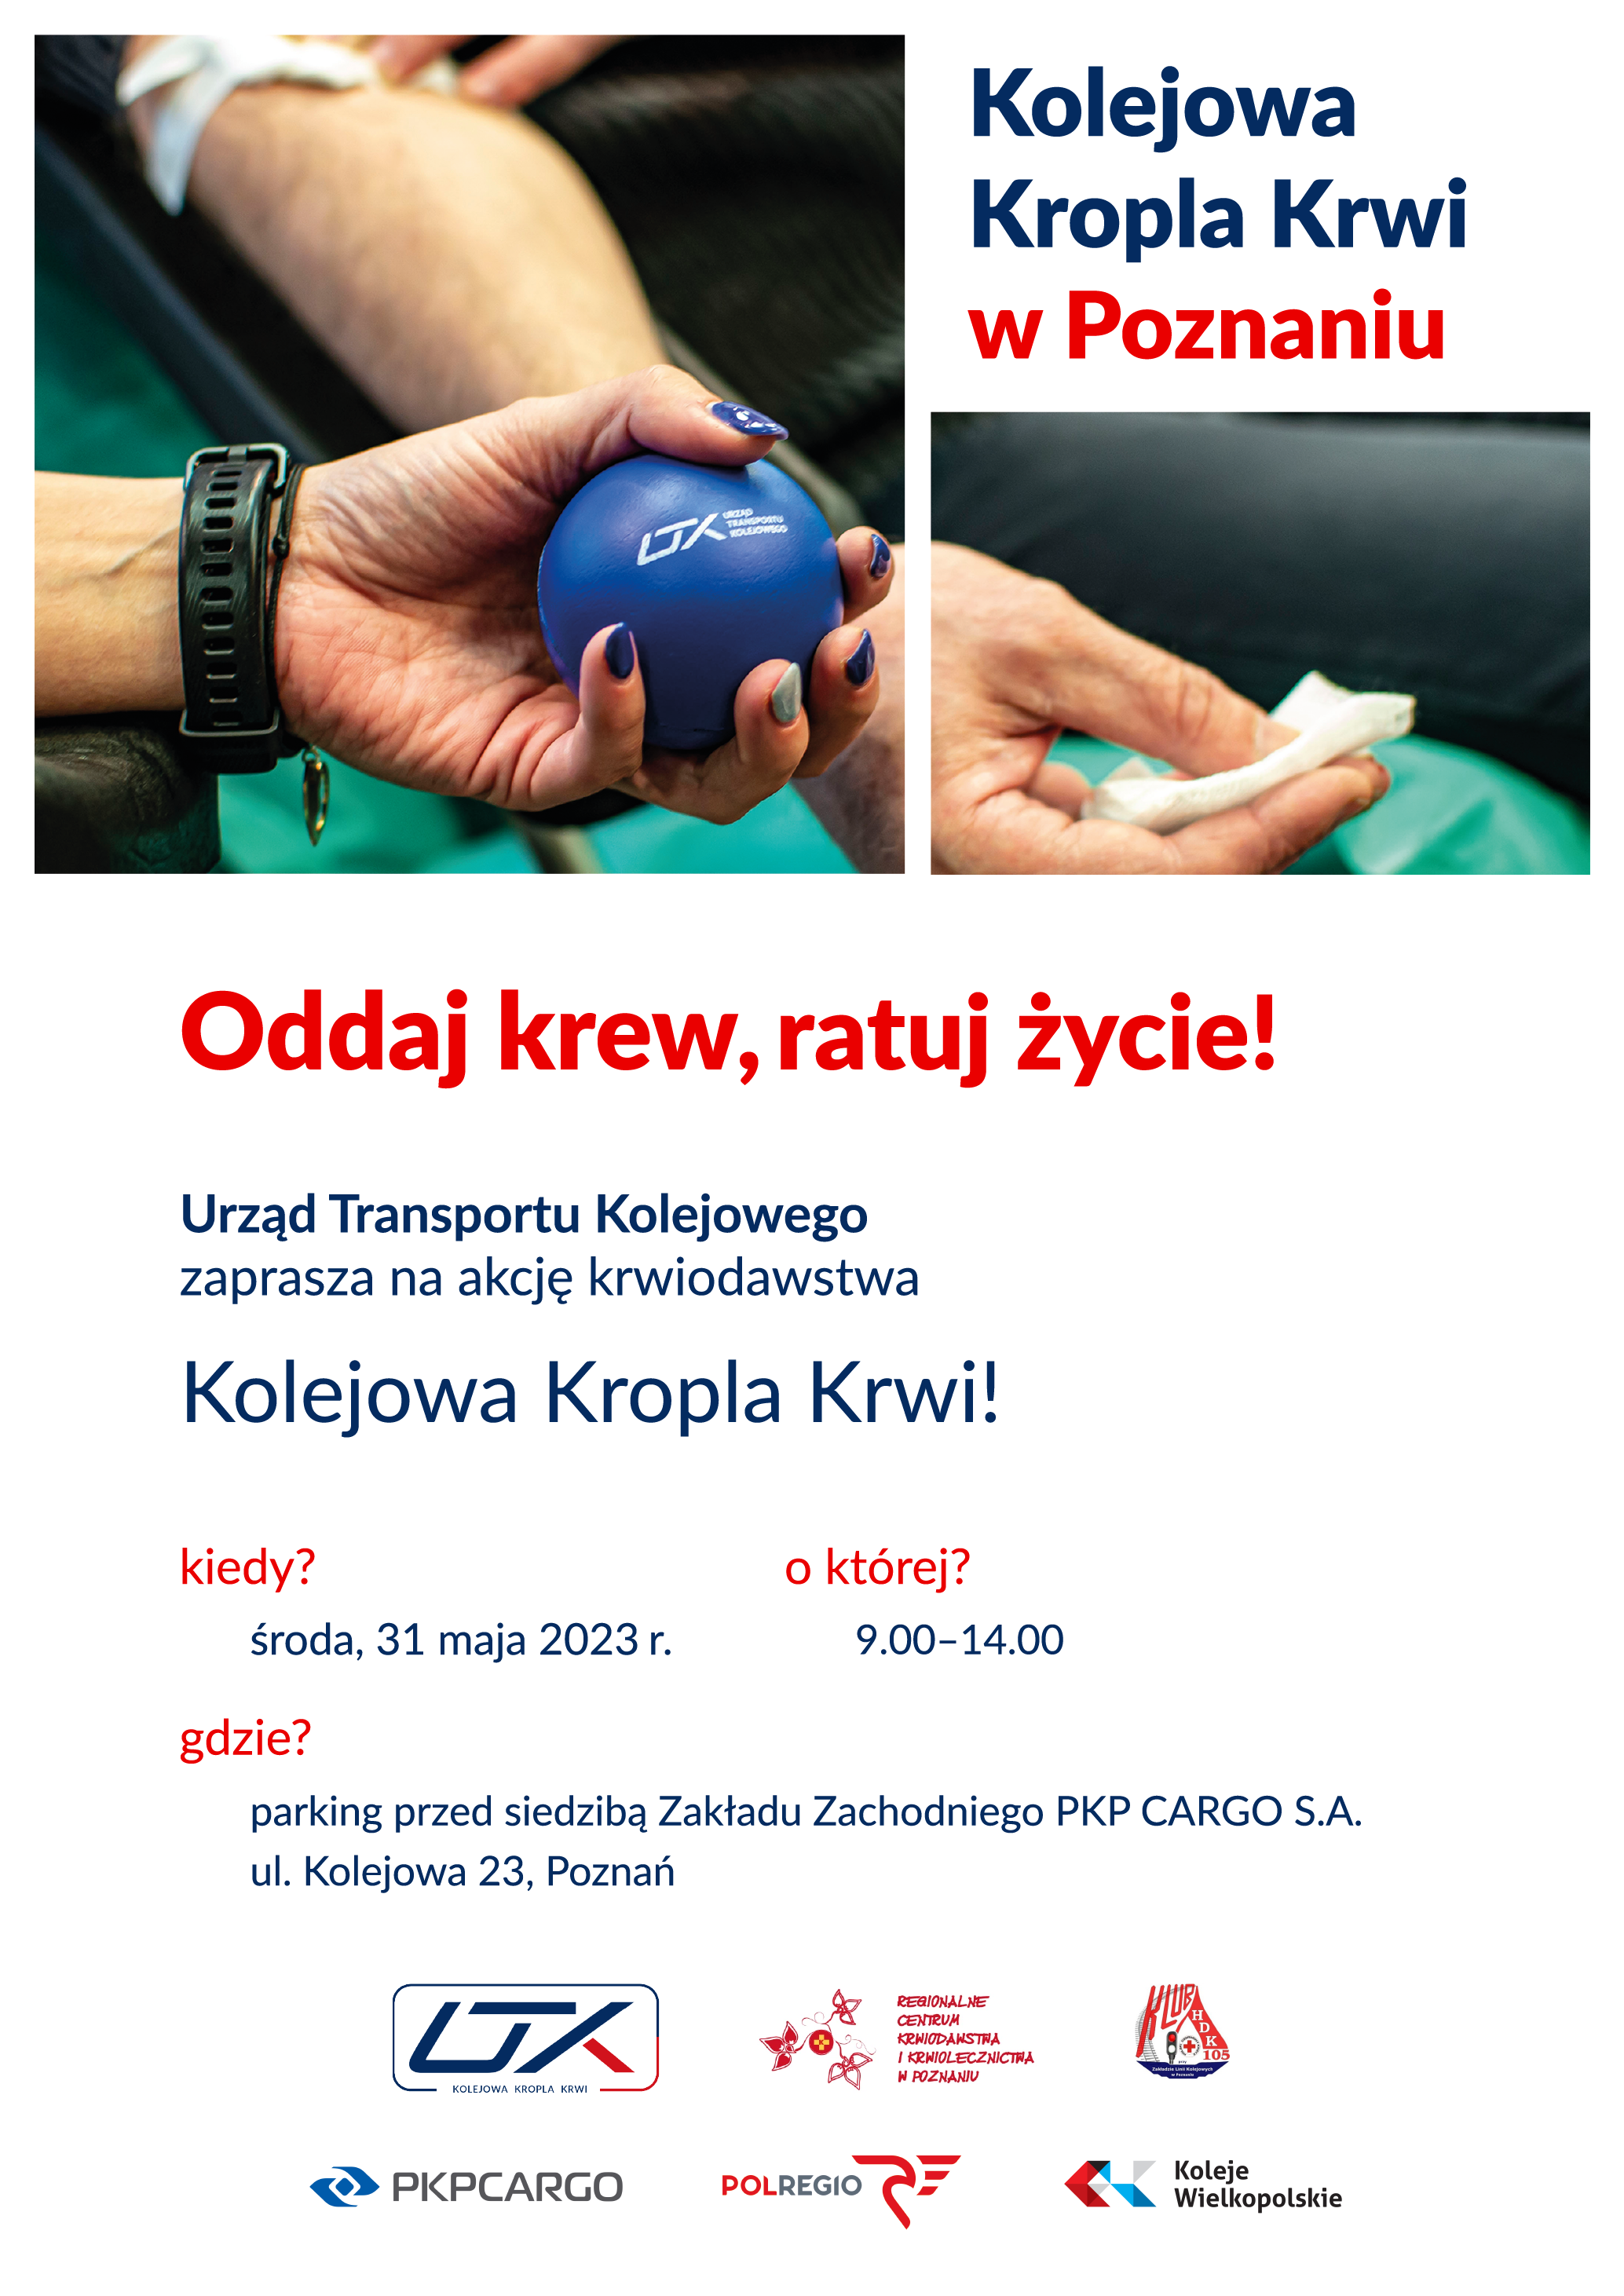 Plakat z tekstem "Kolejowa Kropla Krwi w Poznaniu. Poznań, 31 maja 2023 r. (środa). Oddaj krew, ratuj życie!". 